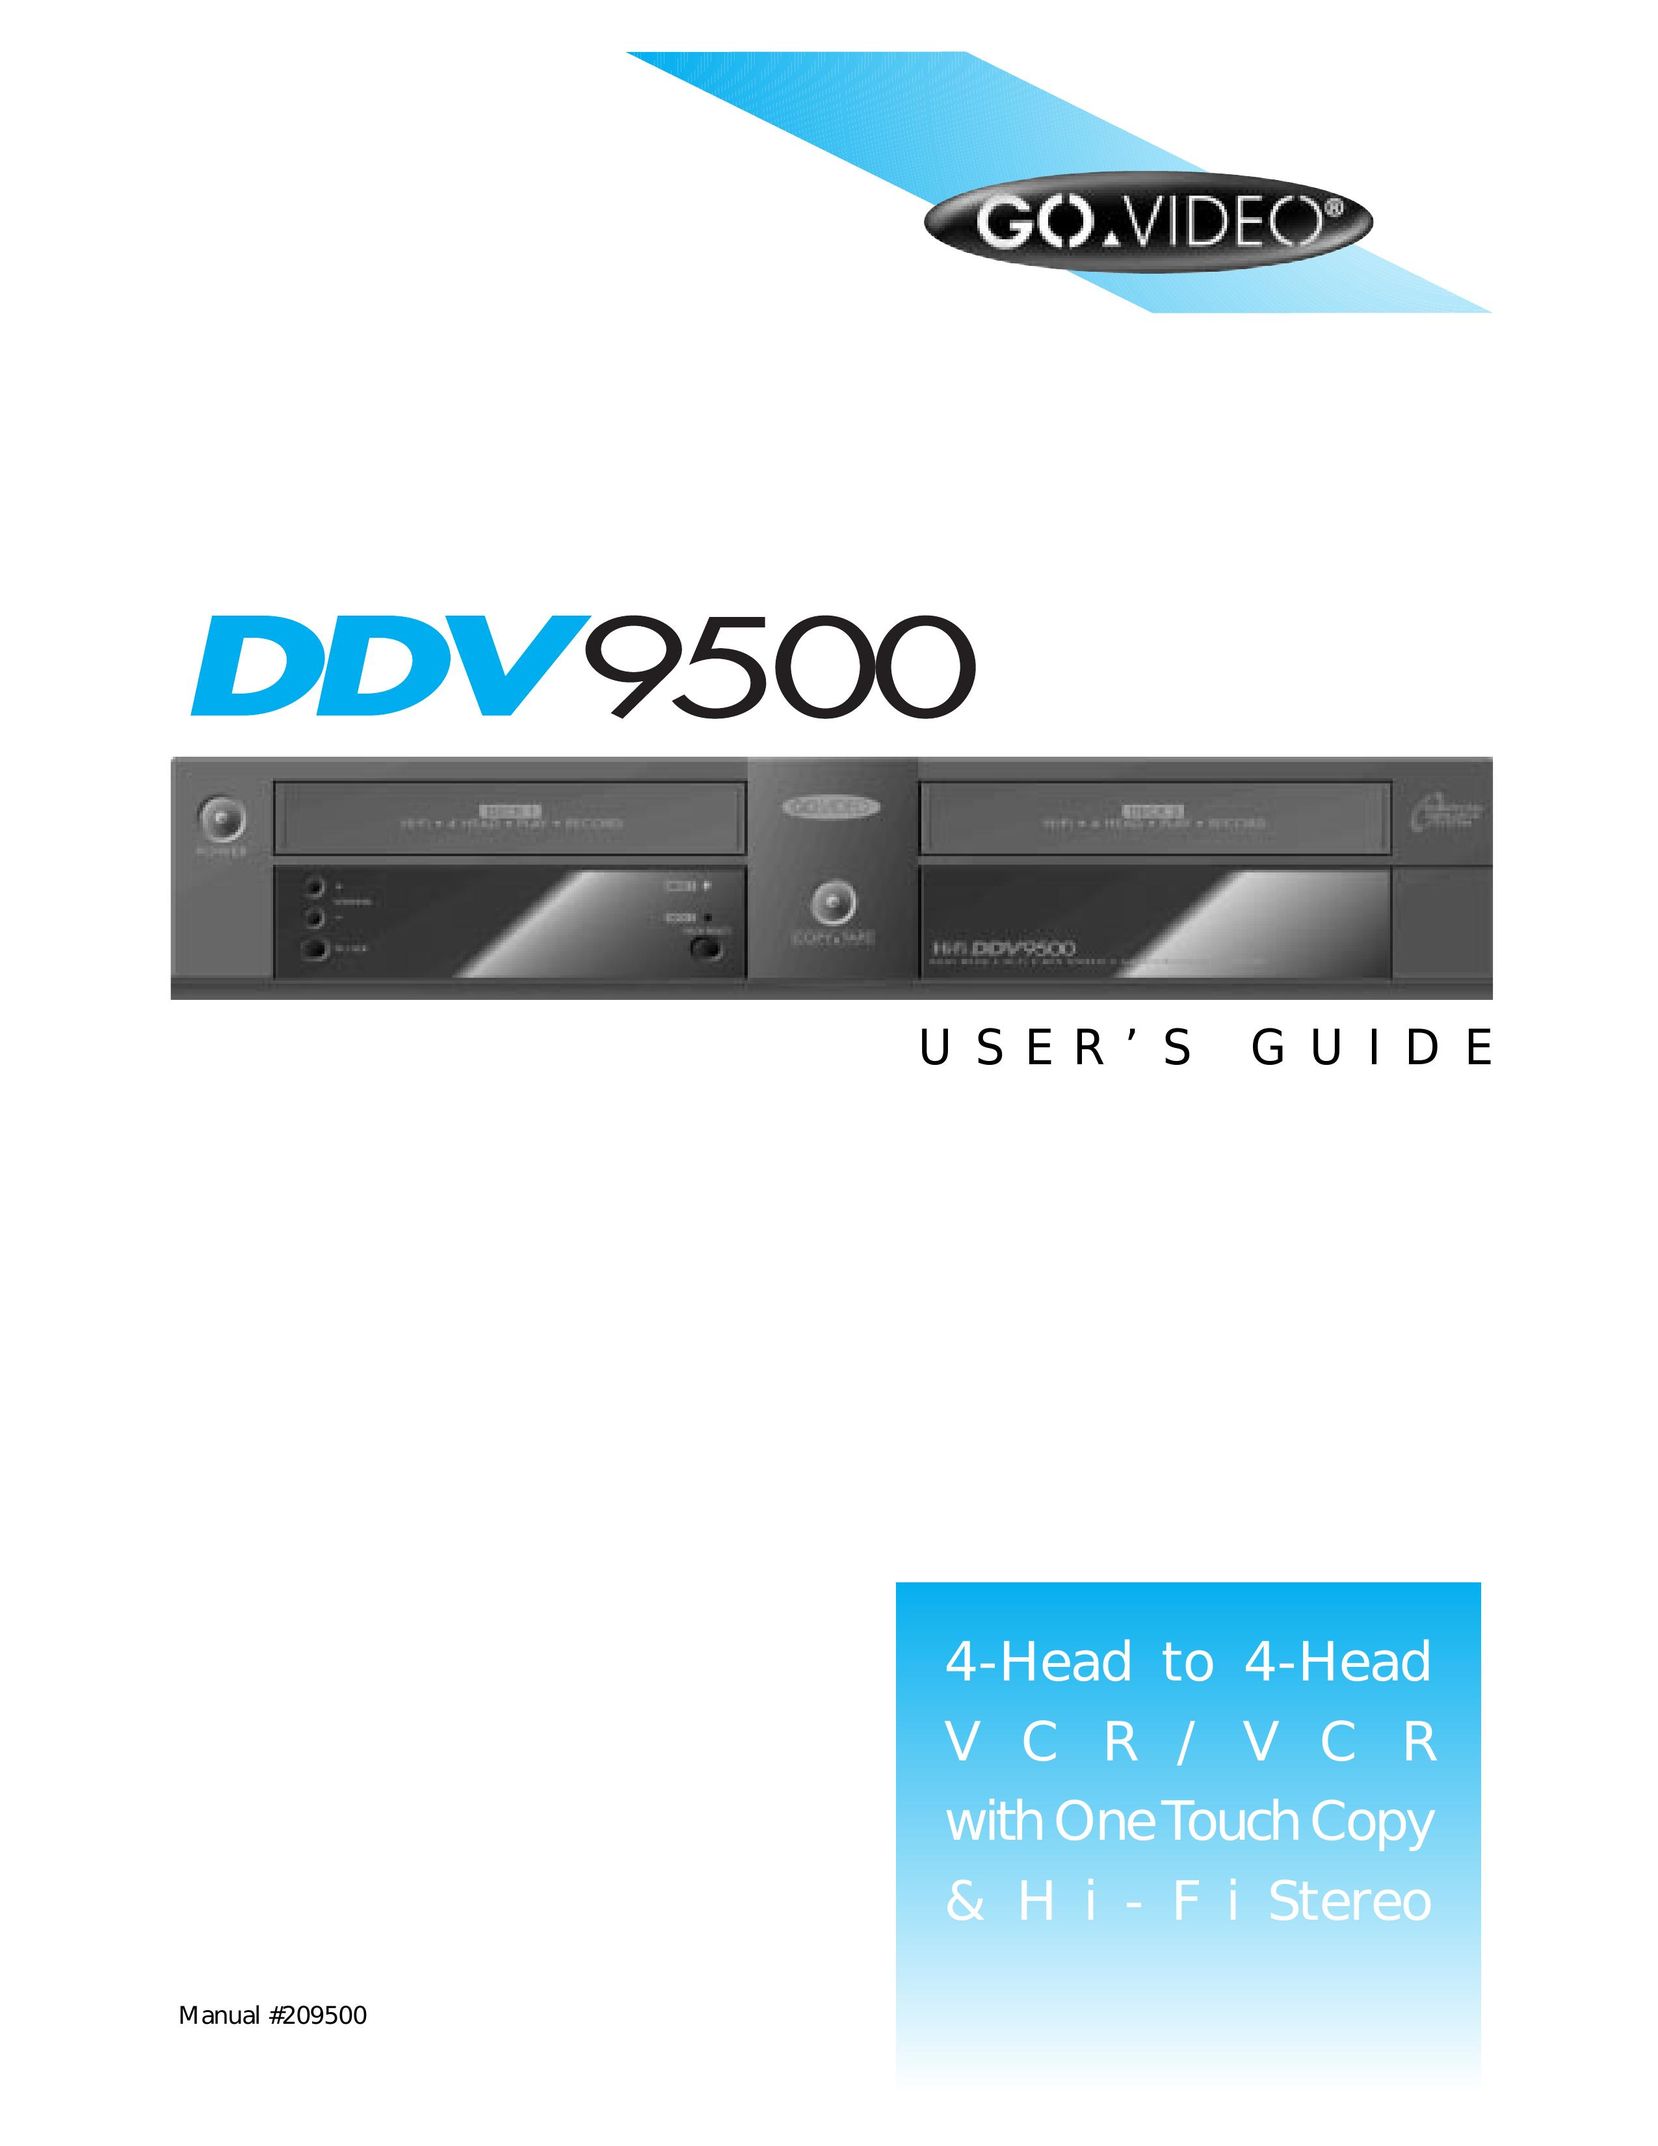 GoVideo DDV9500 VCR User Manual